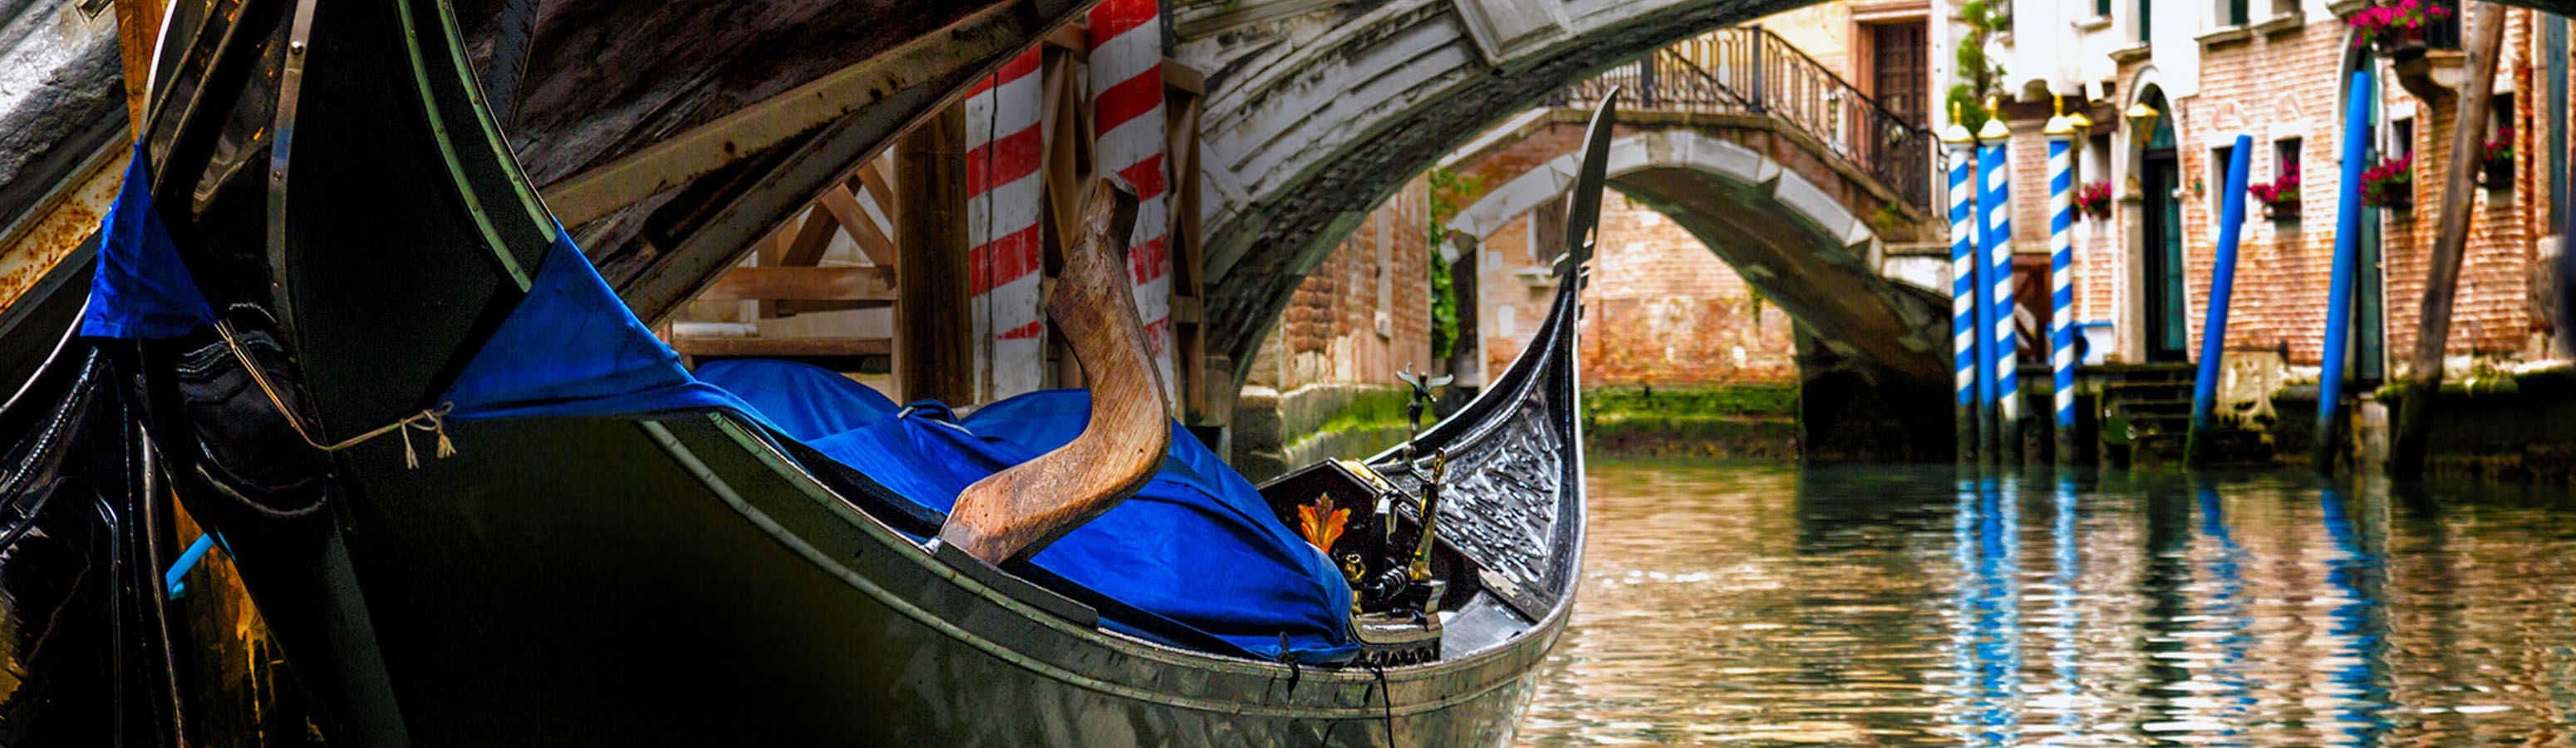 Una crociera in gondola intorno a Venezia potrebbe non essere così romantica come ti aspetti. Ma può essere davvero divertente.